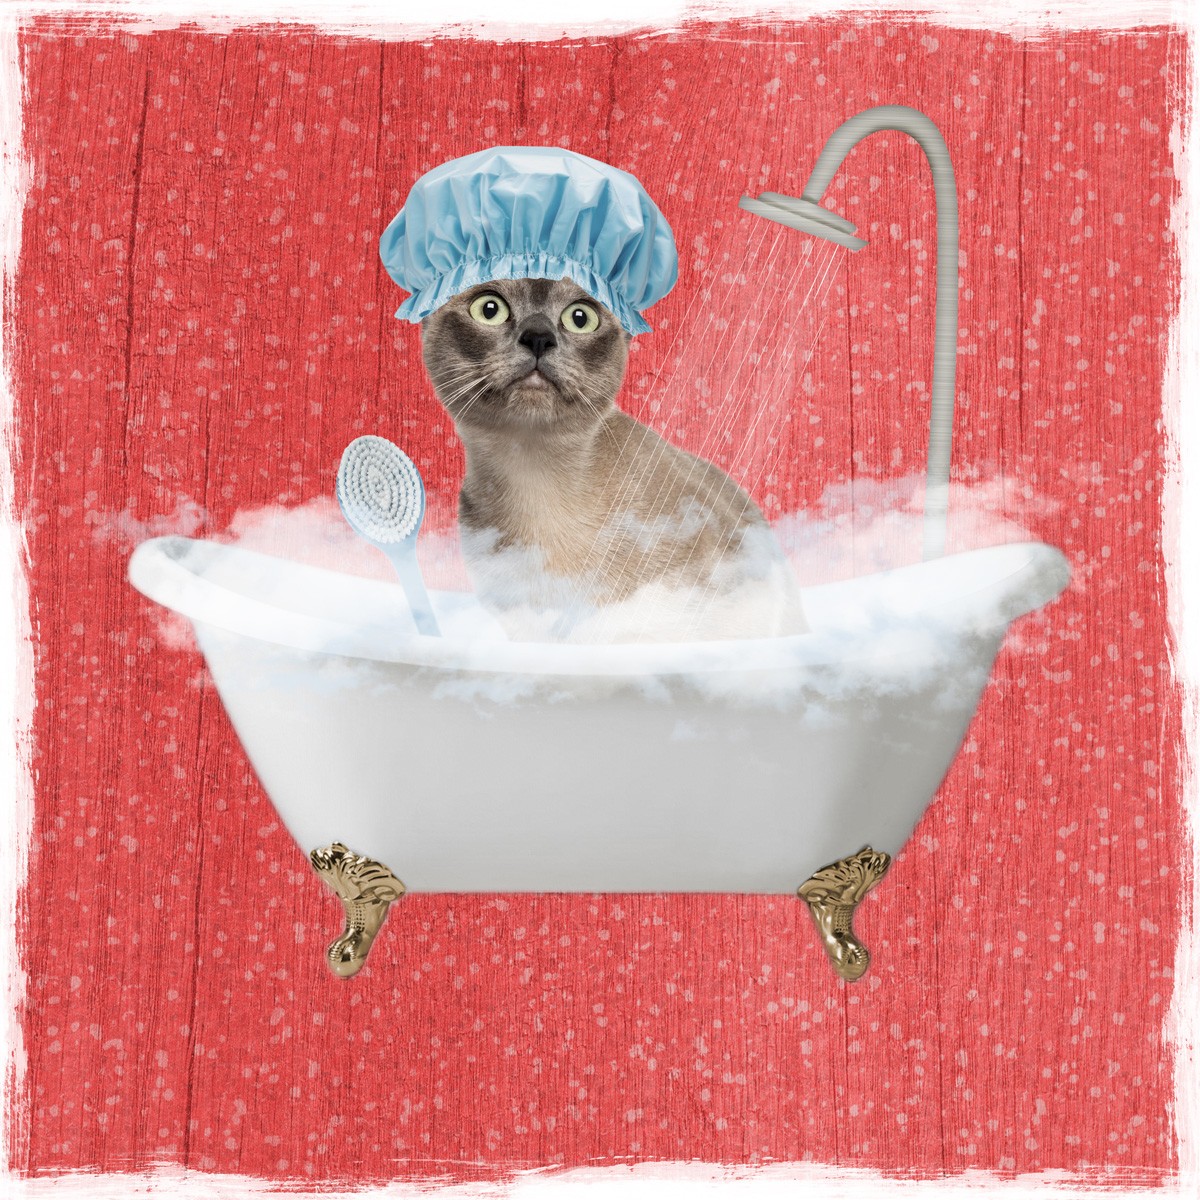 Marcus Prime, Sparkling Kitty 2 (Katze, Badewanne, Dusche, Badeschaum, Badehaube,  witzig, lustig, niedlich, Jugendzimmer, Badezimmer, Grafik, Wunschgröße, bunt)